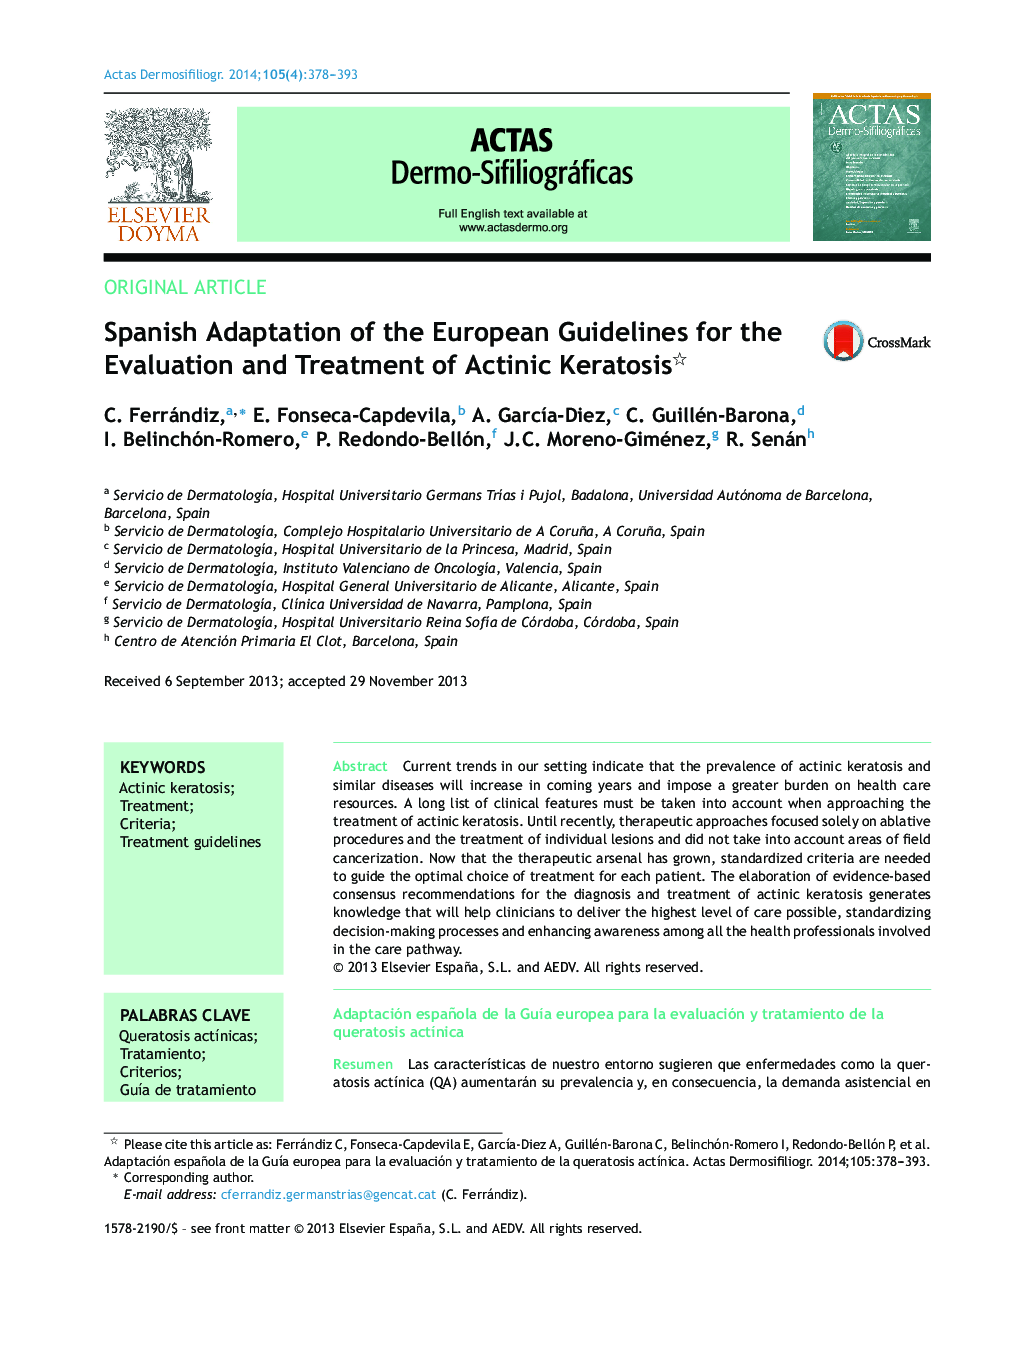 سازگاری اسپانیایی از دستورالعمل های اروپا برای ارزیابی و درمان کراتوز آکتینیک؟ 